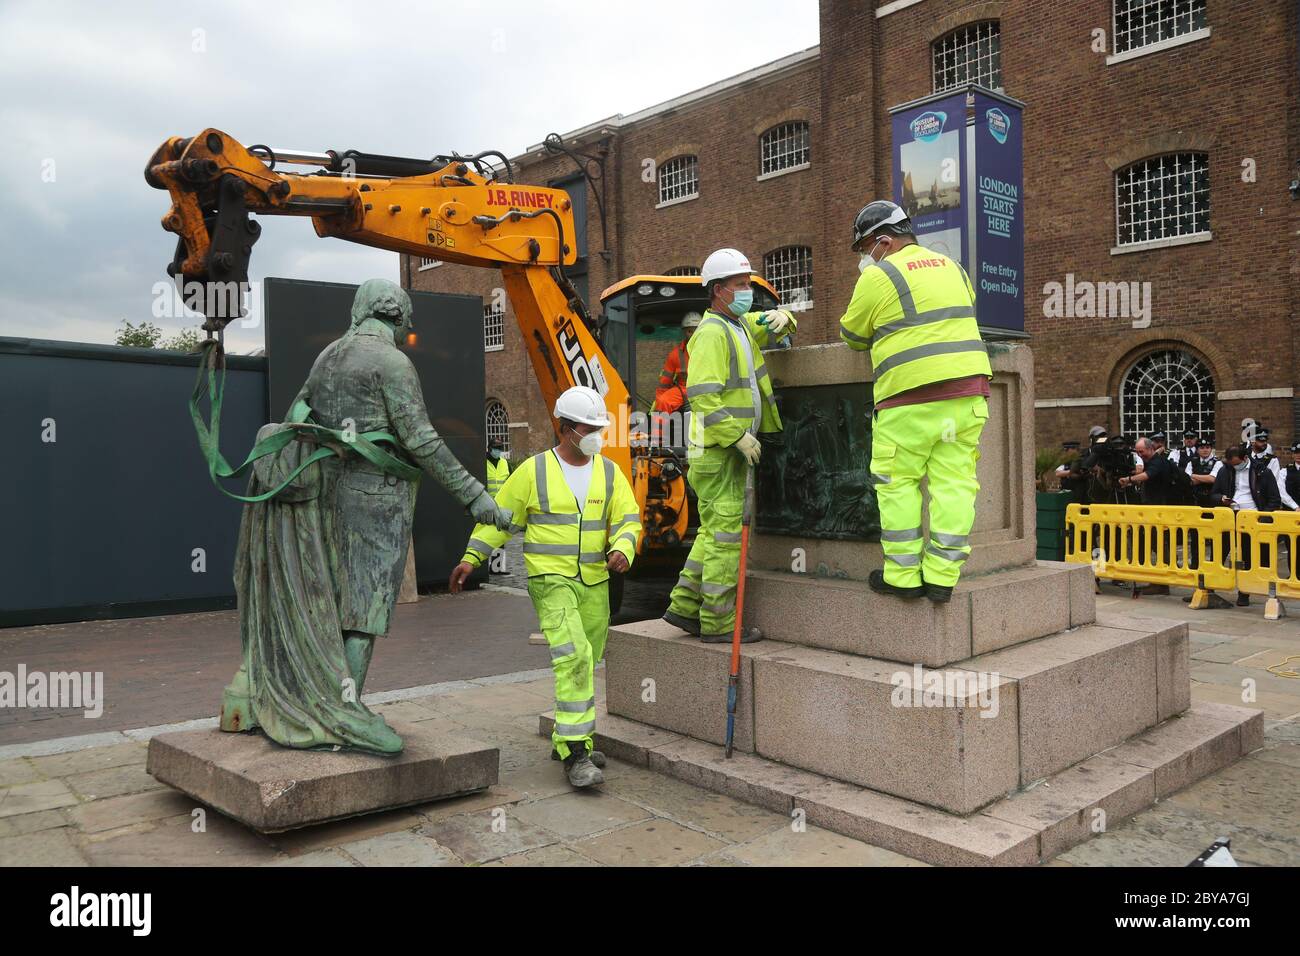 Arbeiter bereiten sich darauf vor, eine Statue des Sklavenbesitzers Robert Milligan am West India Quay, East London, abzubauen, während die Labour Councils in ganz England und Wales beginnen, Denkmäler und Statuen in ihren Städten zu überprüfen. Nach einem Protest wurden in Bristol die Statue eines Sklavenhändlers von Anti-Rassismus-Aktivisten niedergerissen. Stockfoto